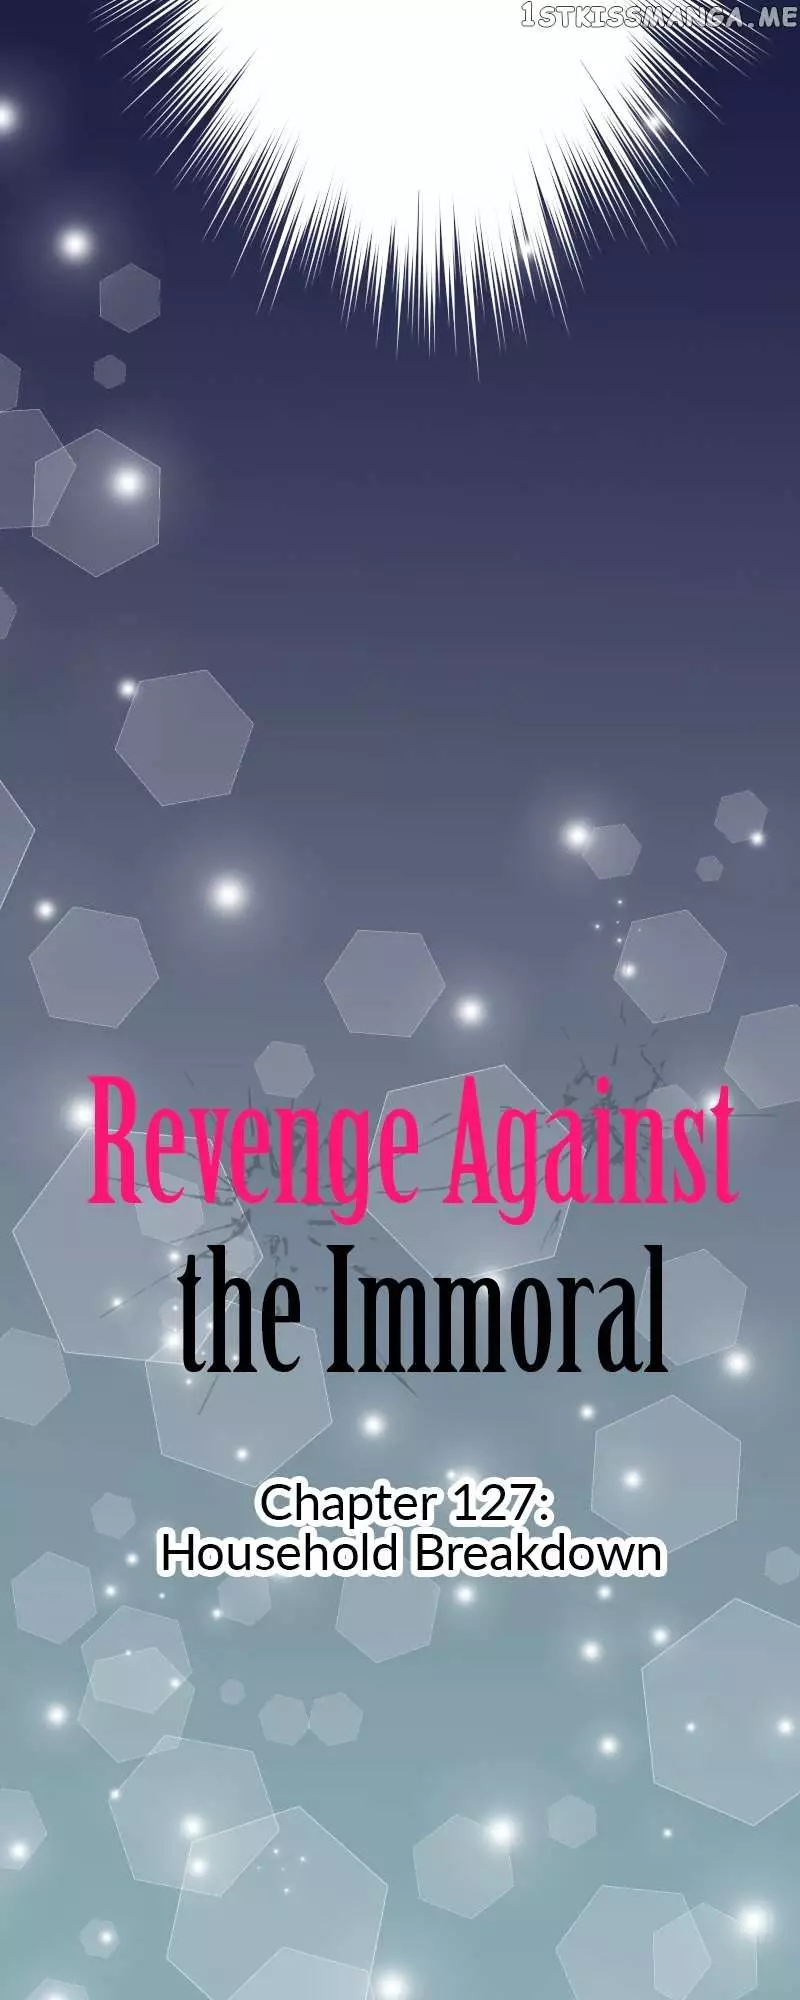 Revenge Against The Immoral - 127 page 6-4af32f32